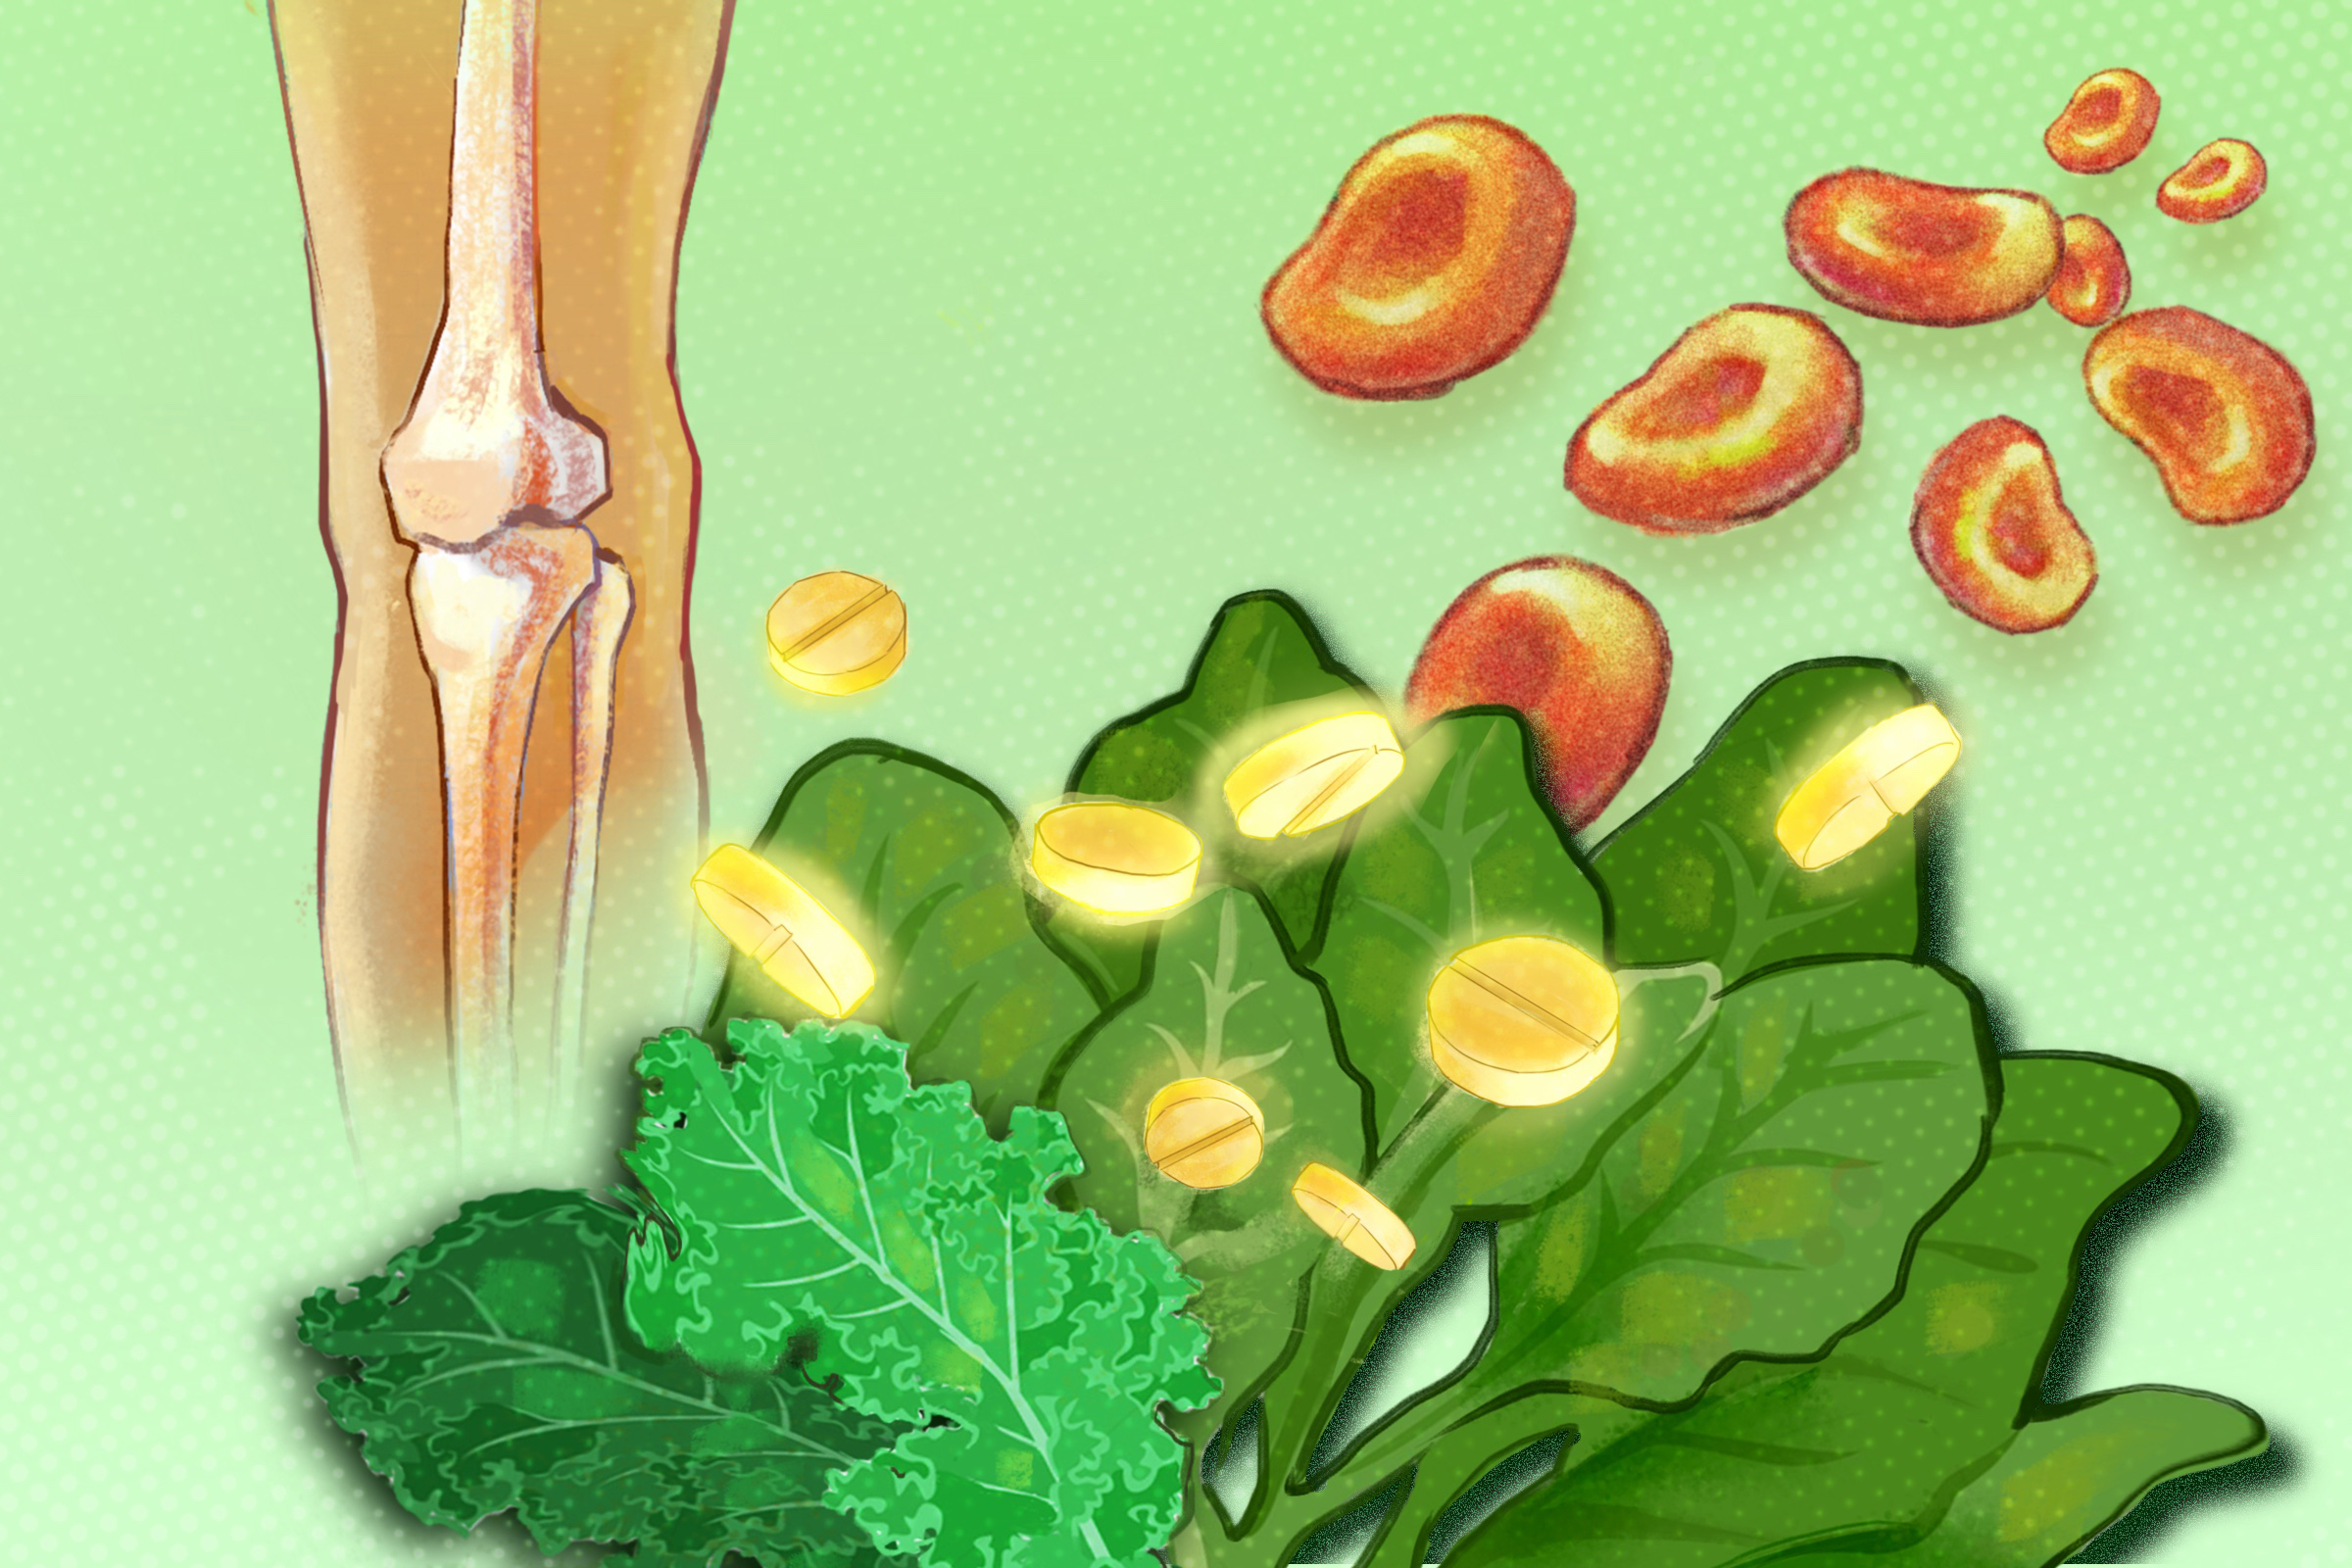 Vitamin K tham gia vào quá trình đông máu và củng cố xương. (Minh họa của The Epoch Times)